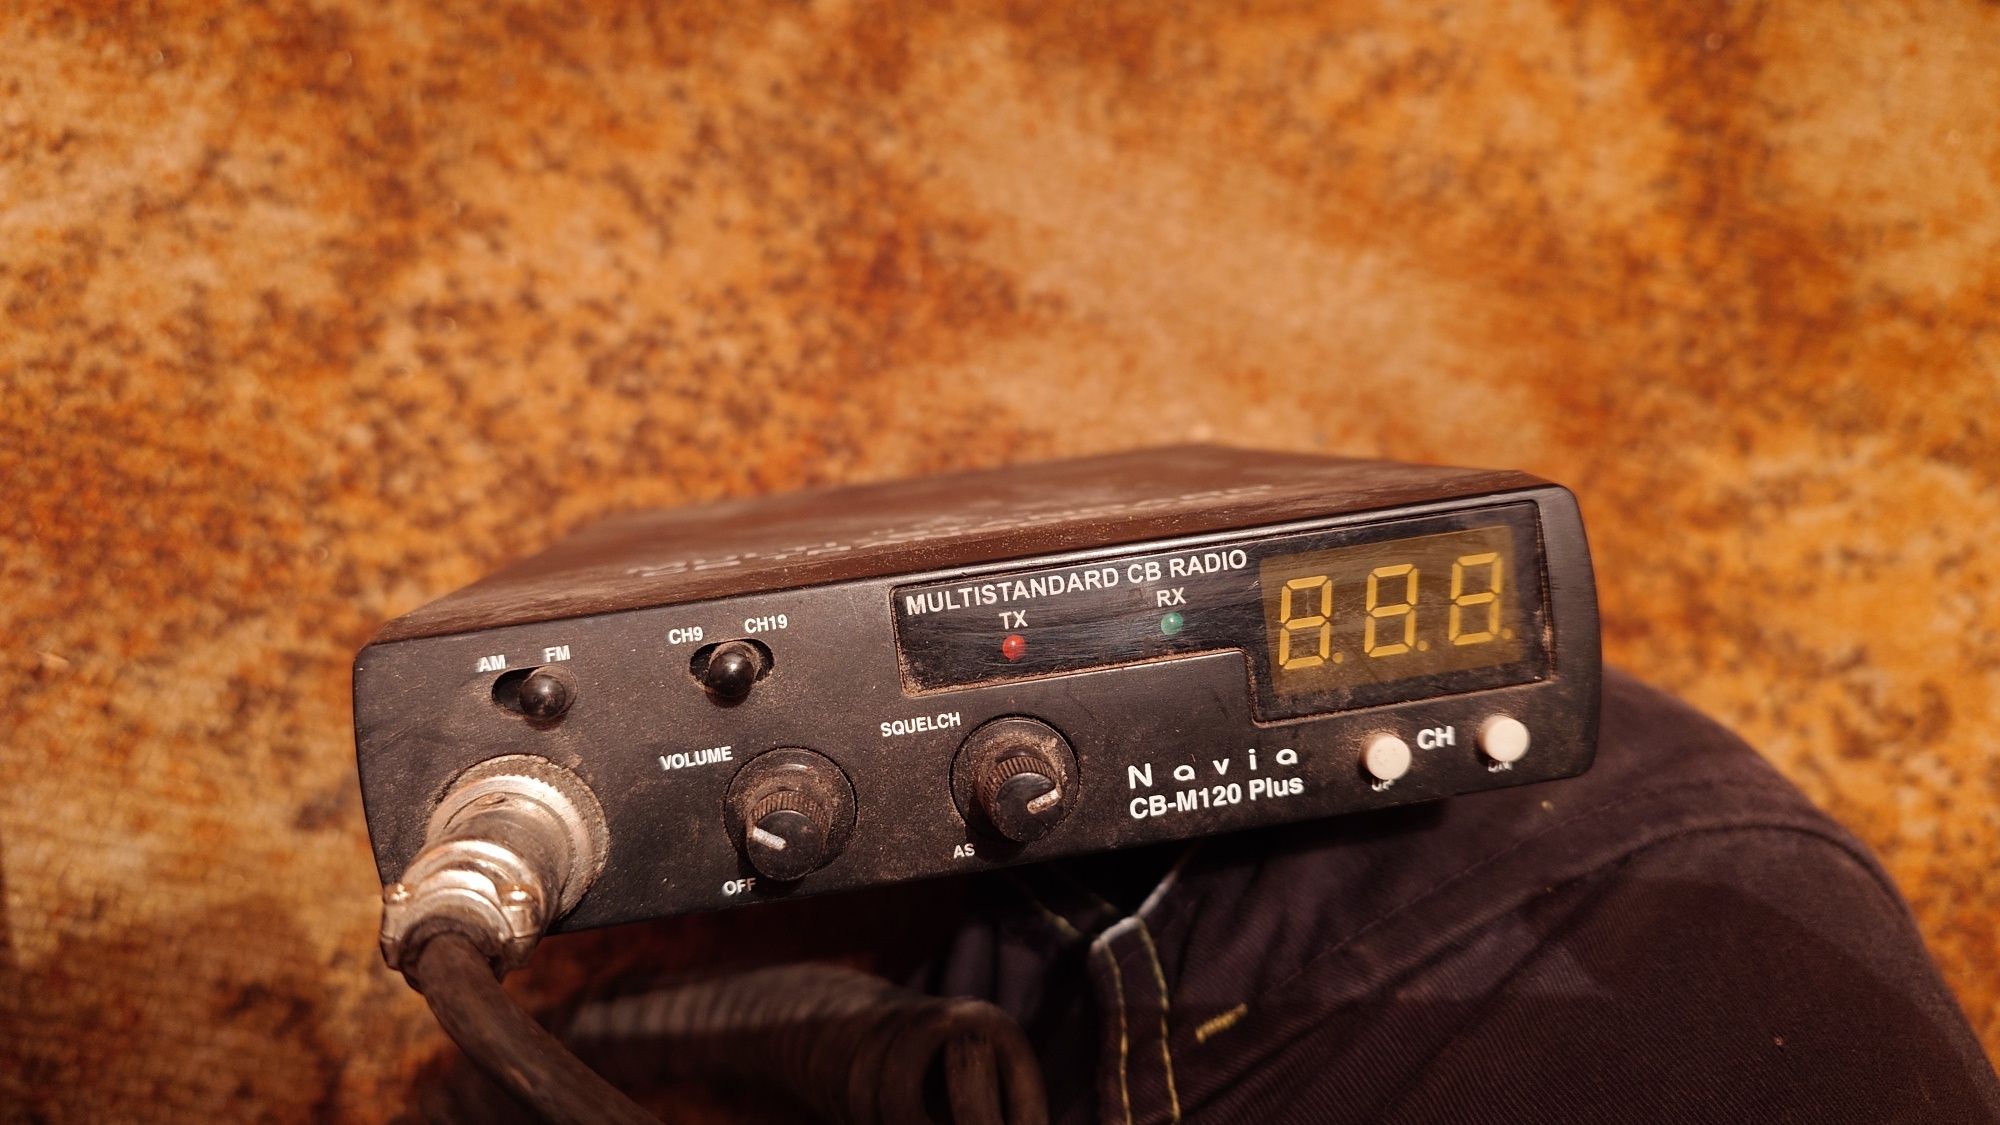 CB radio Navia CB-M120 PLUS